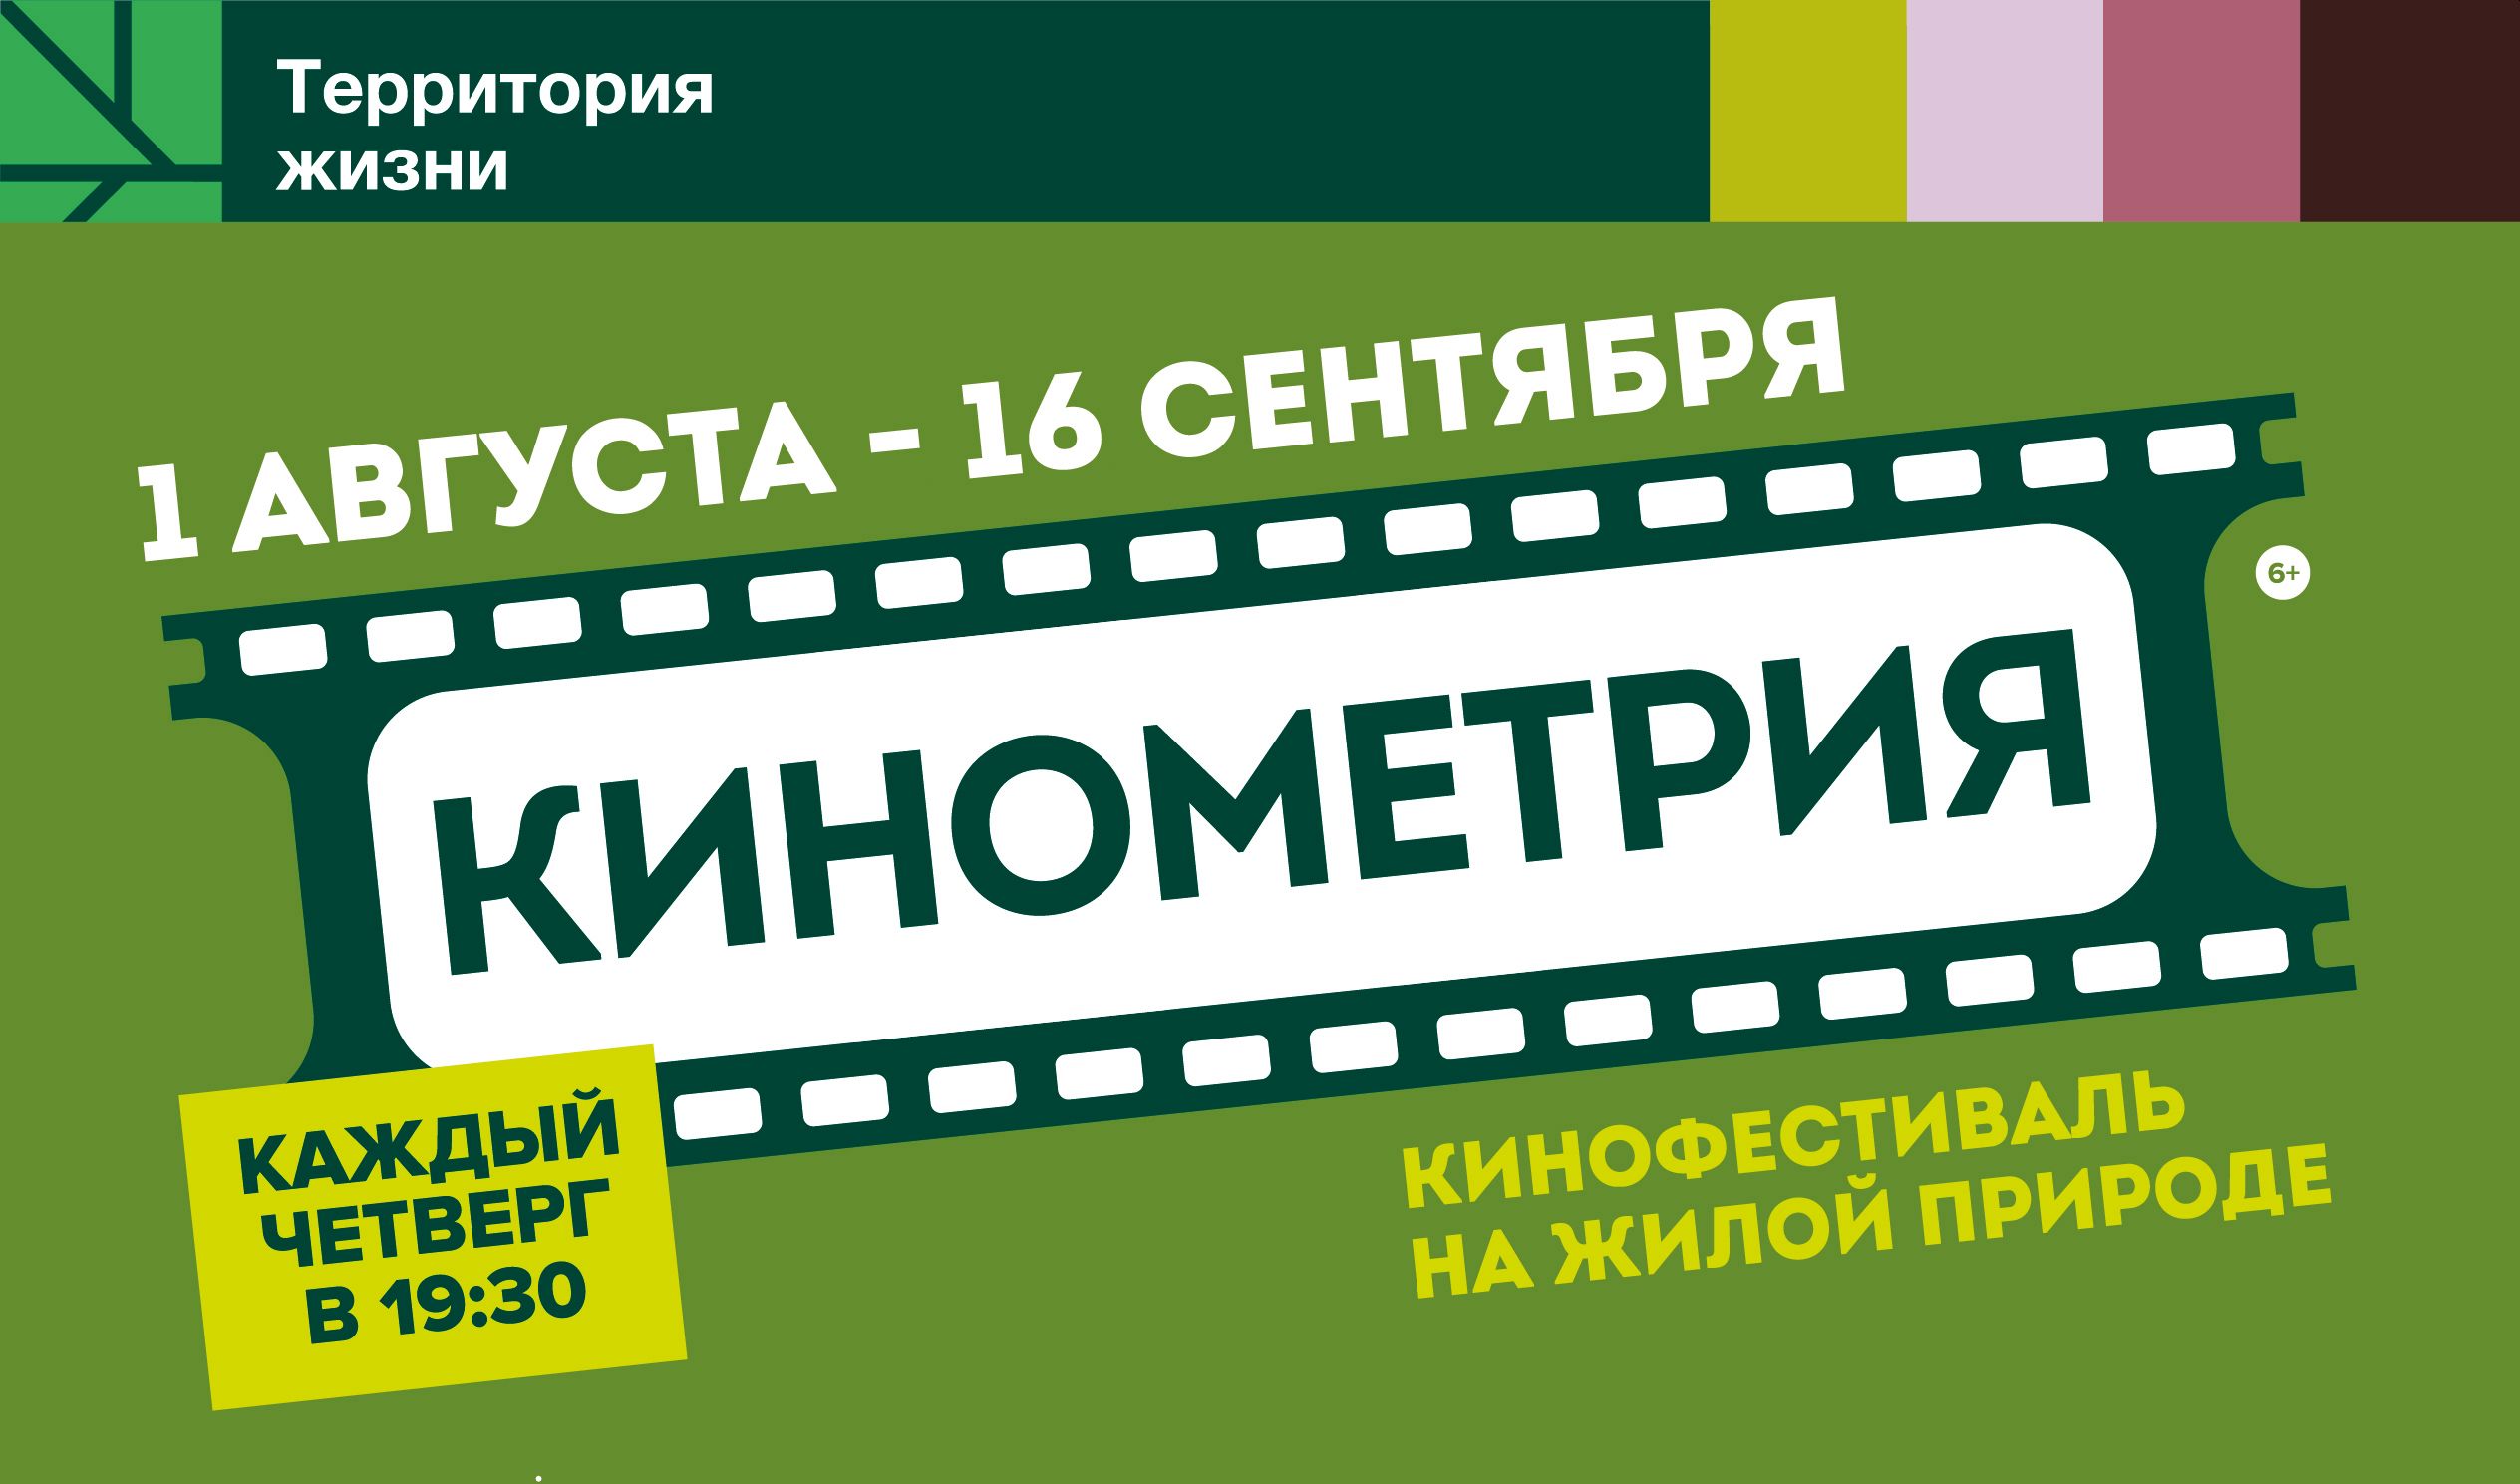 Внимание! Открытие фестиваля «Кинометрия» переносится на 1 августа